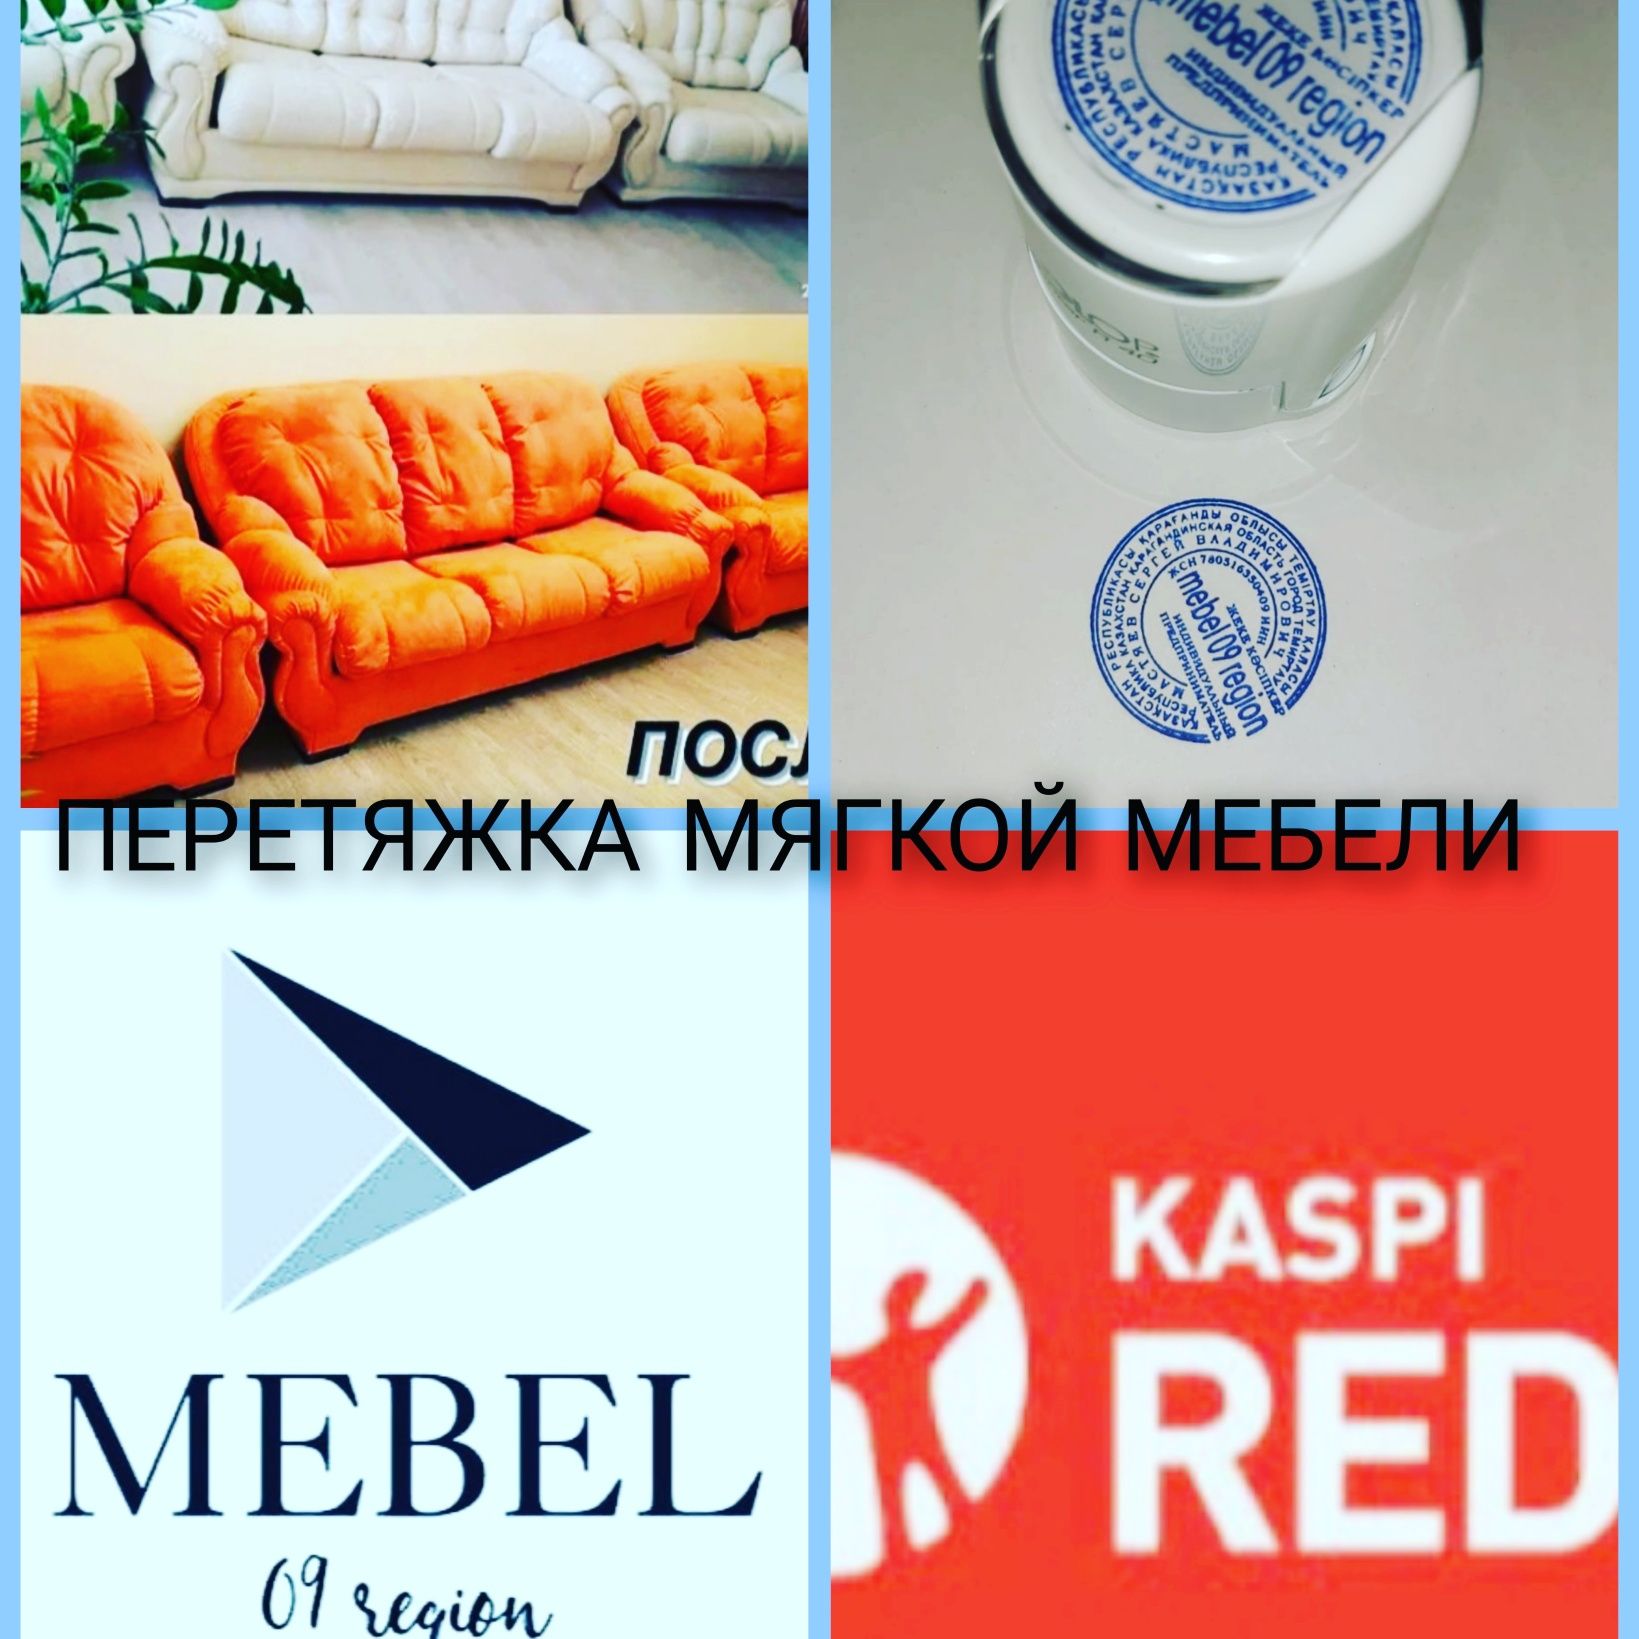 ИП"mebel_09_region"Перетяжка мягкой мебели у В